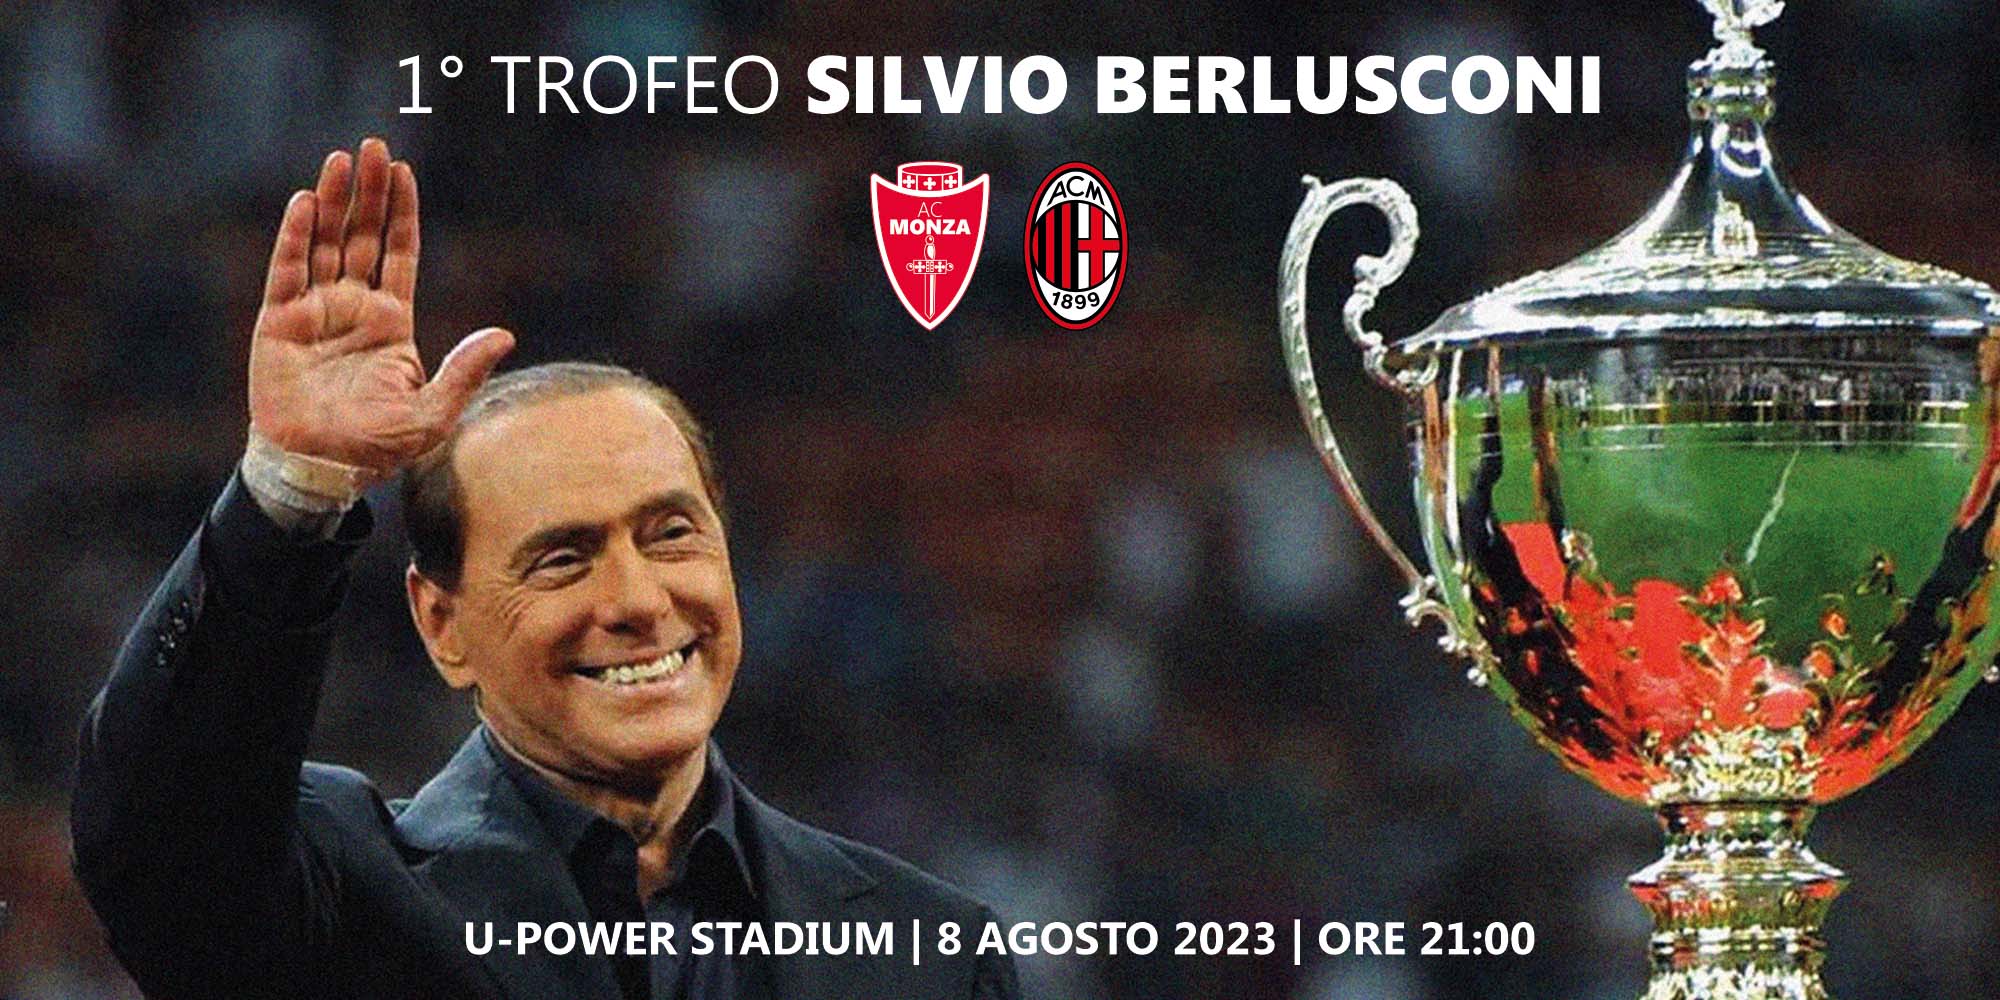 Trofeo Berlusconi, è già tutto esaurito tra Monza e Milan